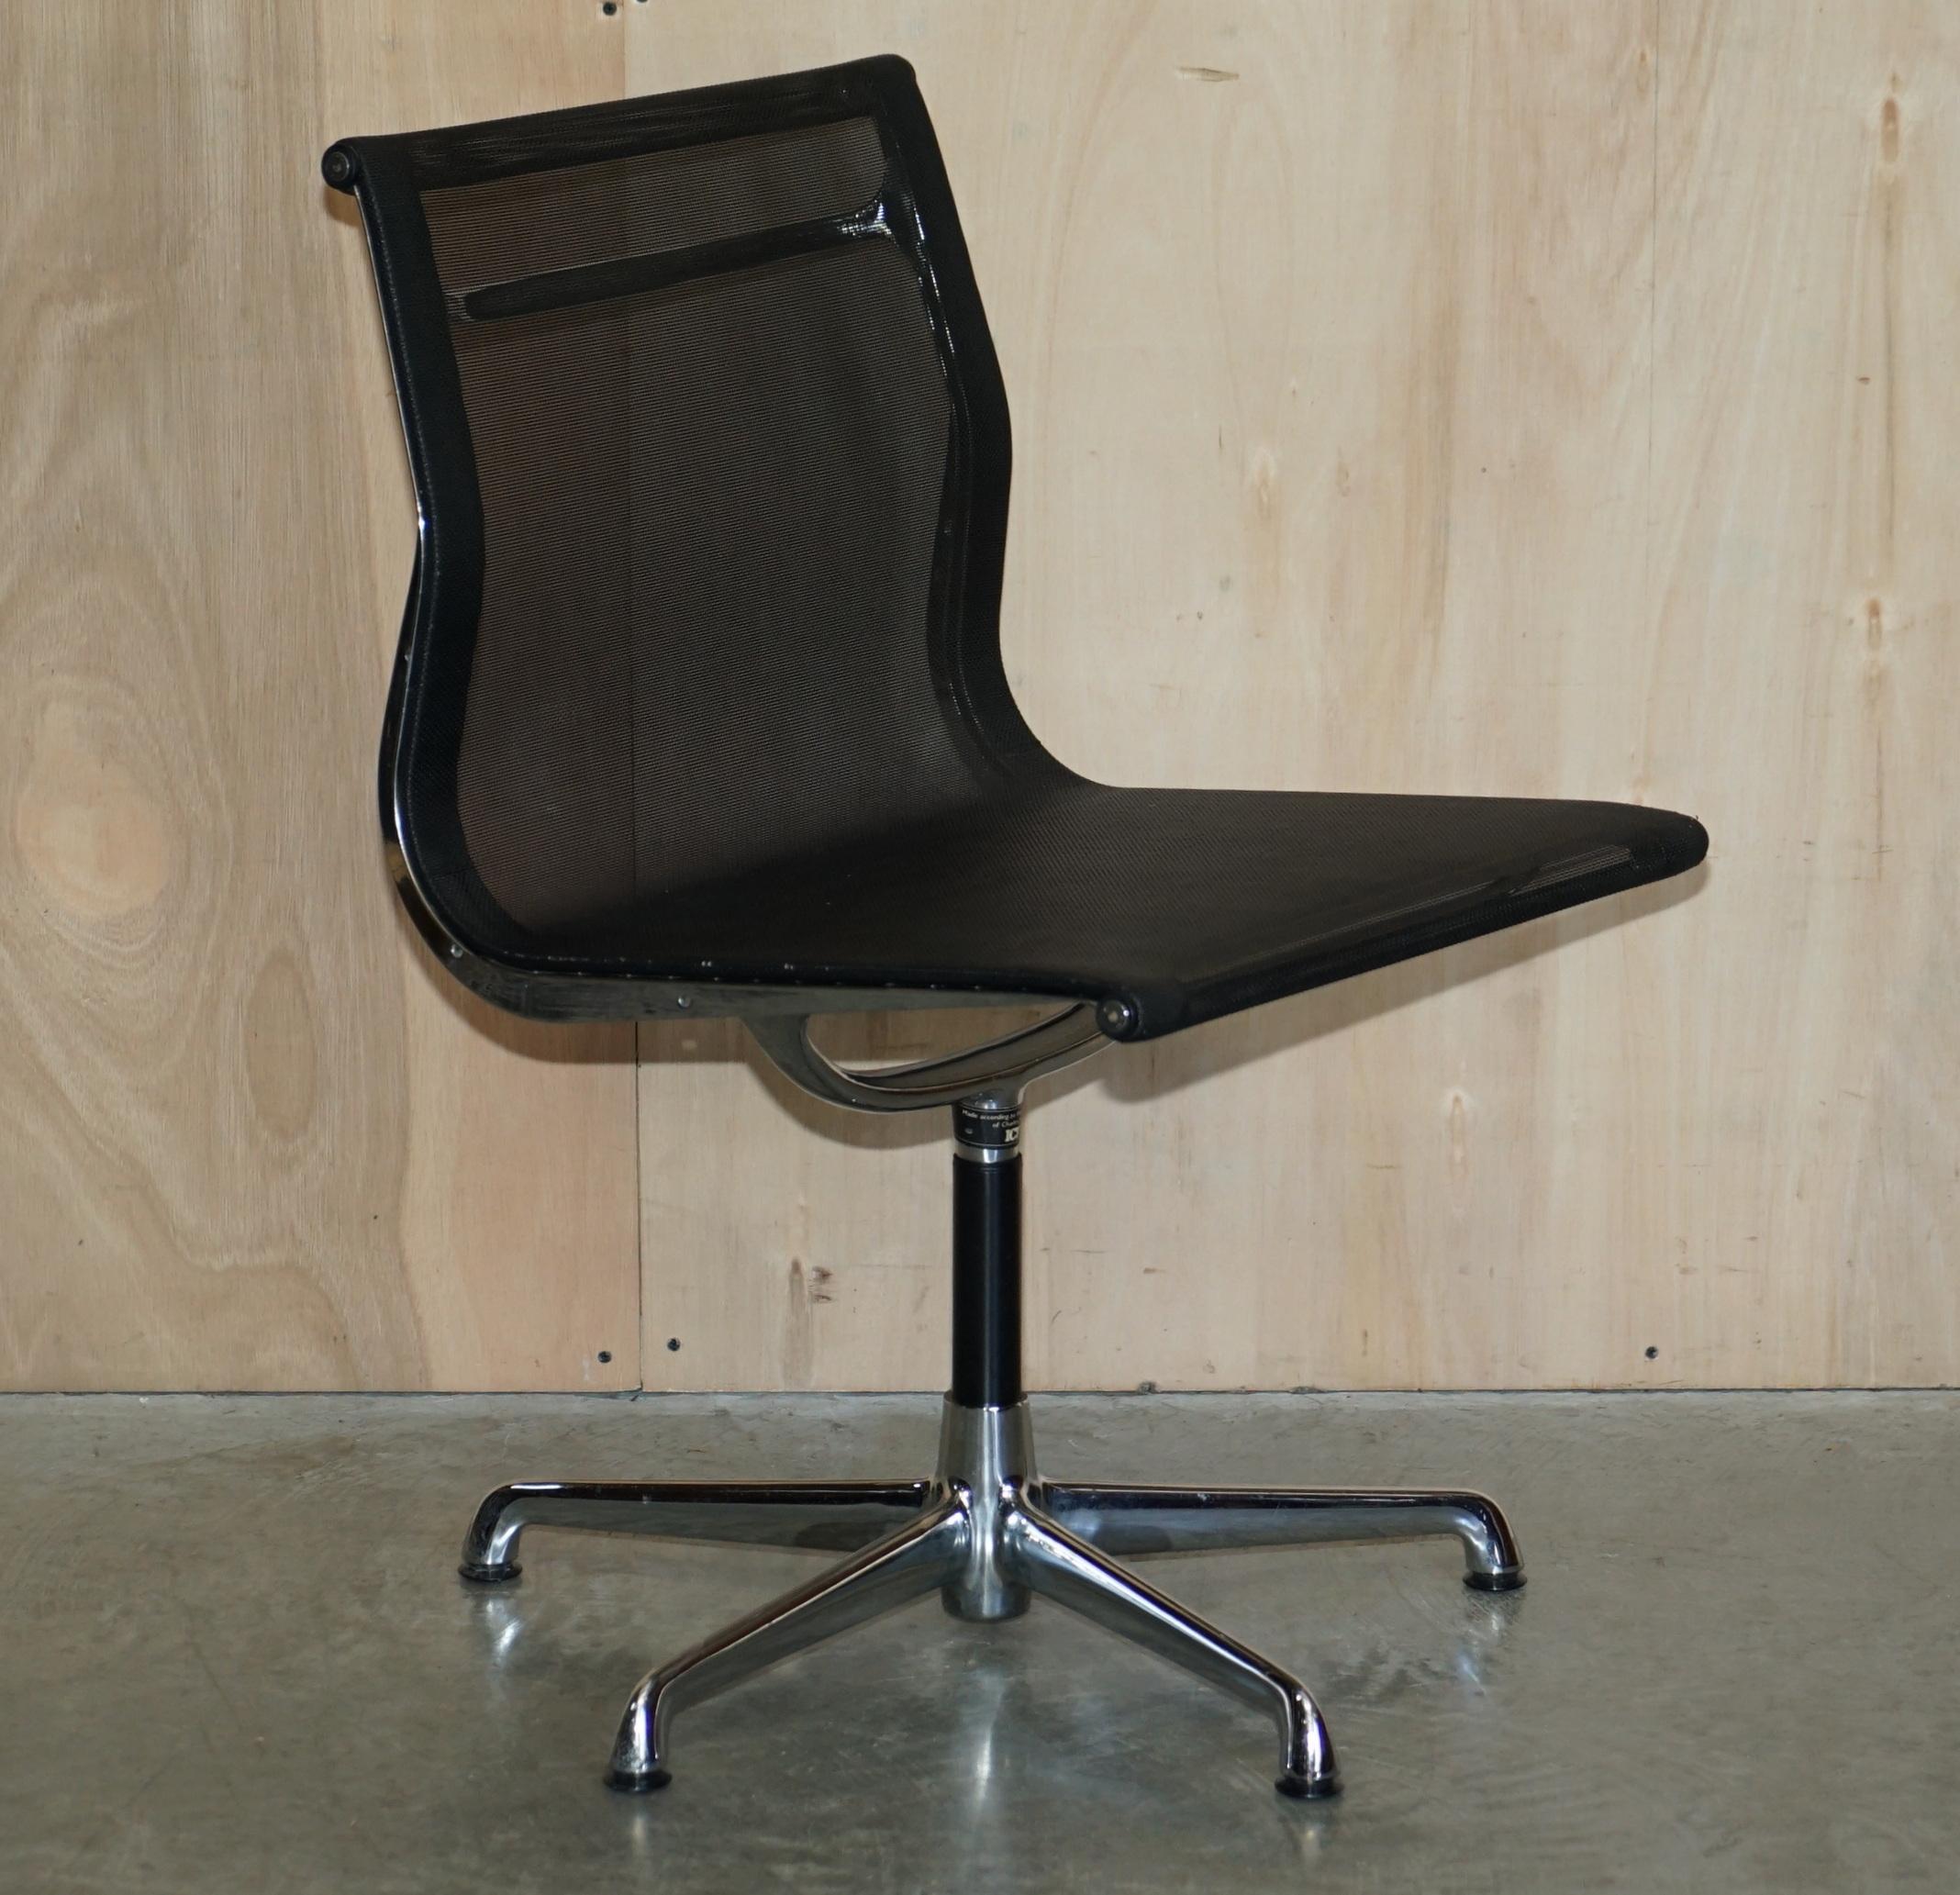 Nous avons le plaisir de proposer à la vente 1 des 4 fauteuils pivotants chromés originaux entièrement estampillés ICF pour Charles Eames, EA105 Hopsak RRP £2,096 chacun.

Super iconiques, primées, que dire de plus, ce sont les chaises de bureau